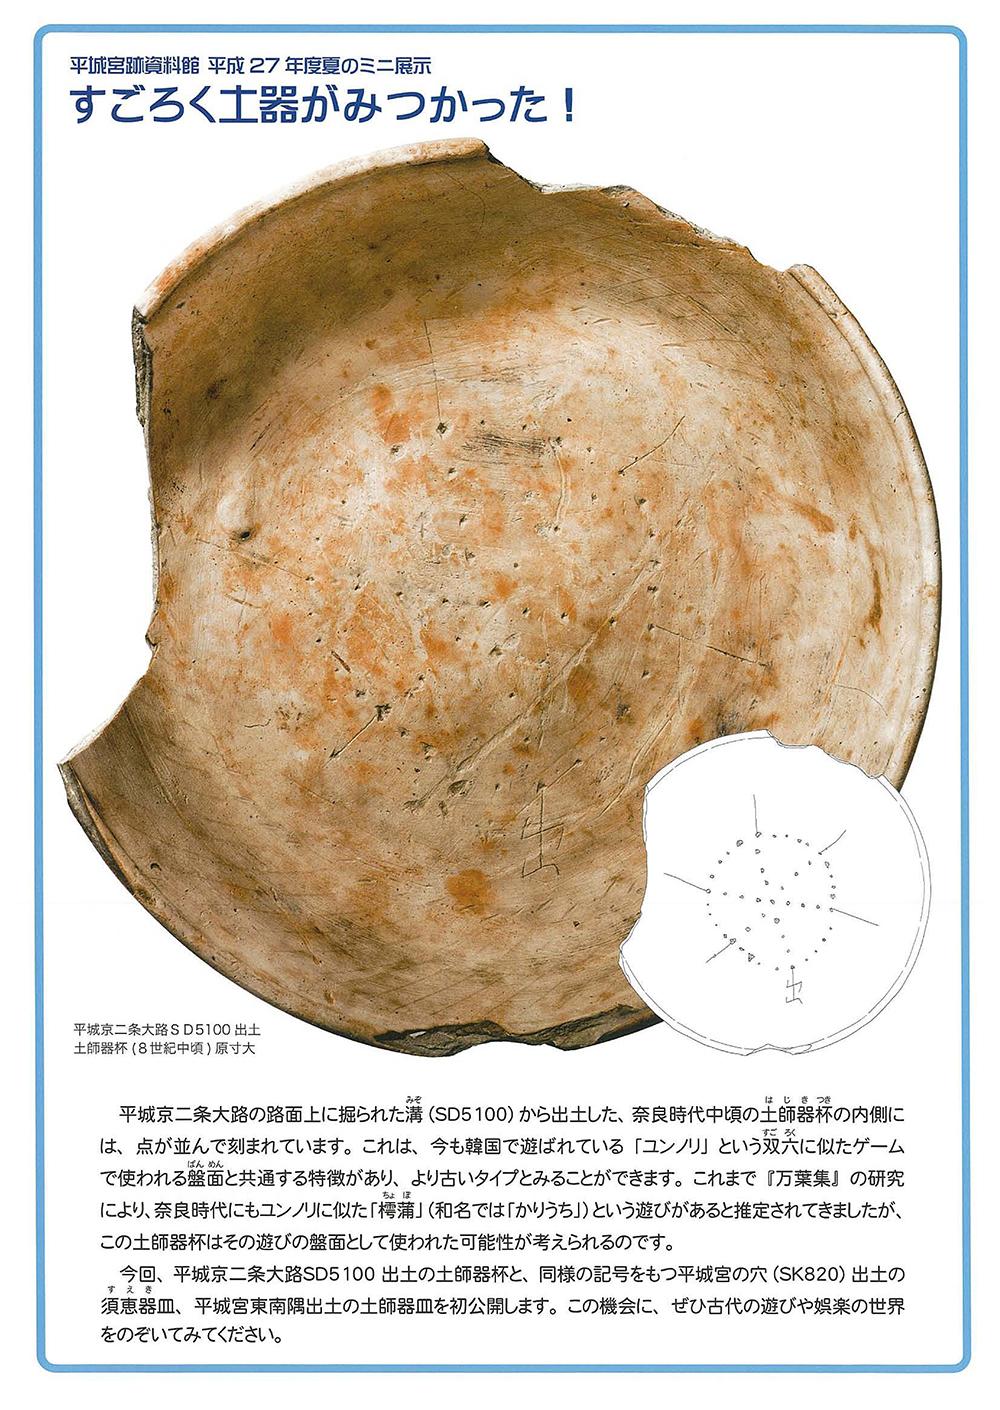 平城宮跡資料館平成27年度夏のミニ展示 すごろく土器がみつかった!